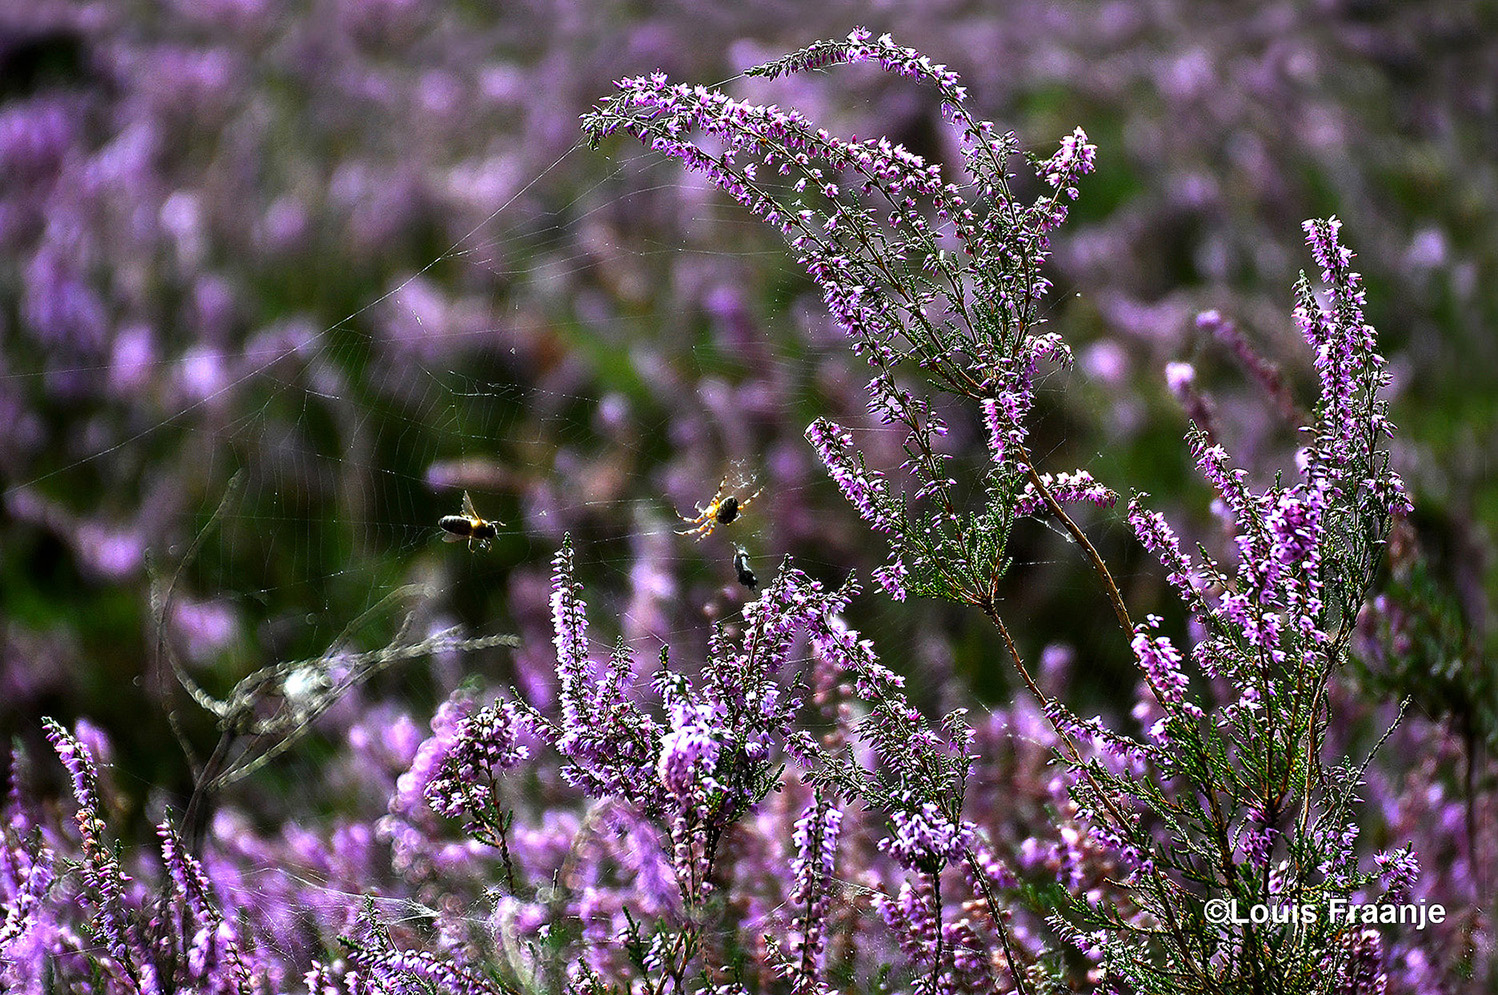 De honingbij gevangen in het web van de kruisspin - Foto: ©Louis Fraanje